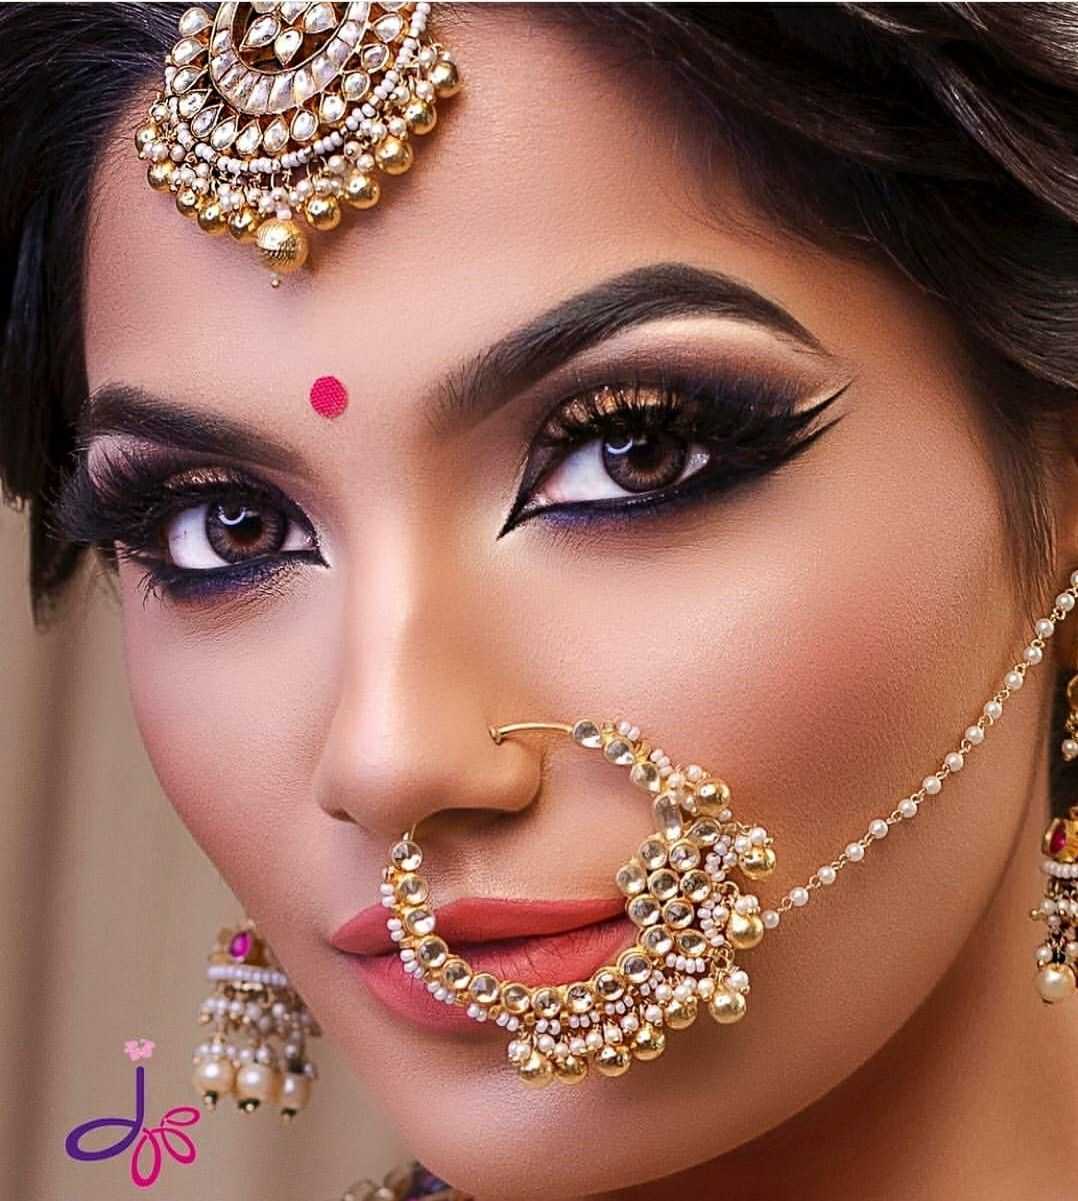 Индийский макияж для девушек подойдет и смуглолицым дувушкам, и светлокожим Где найти пошаговое нанесение или как сделать make-up в стиле индианки Как подобрать цвета, чтобы макияж выглядел привлекательно и подходил к цветотипу